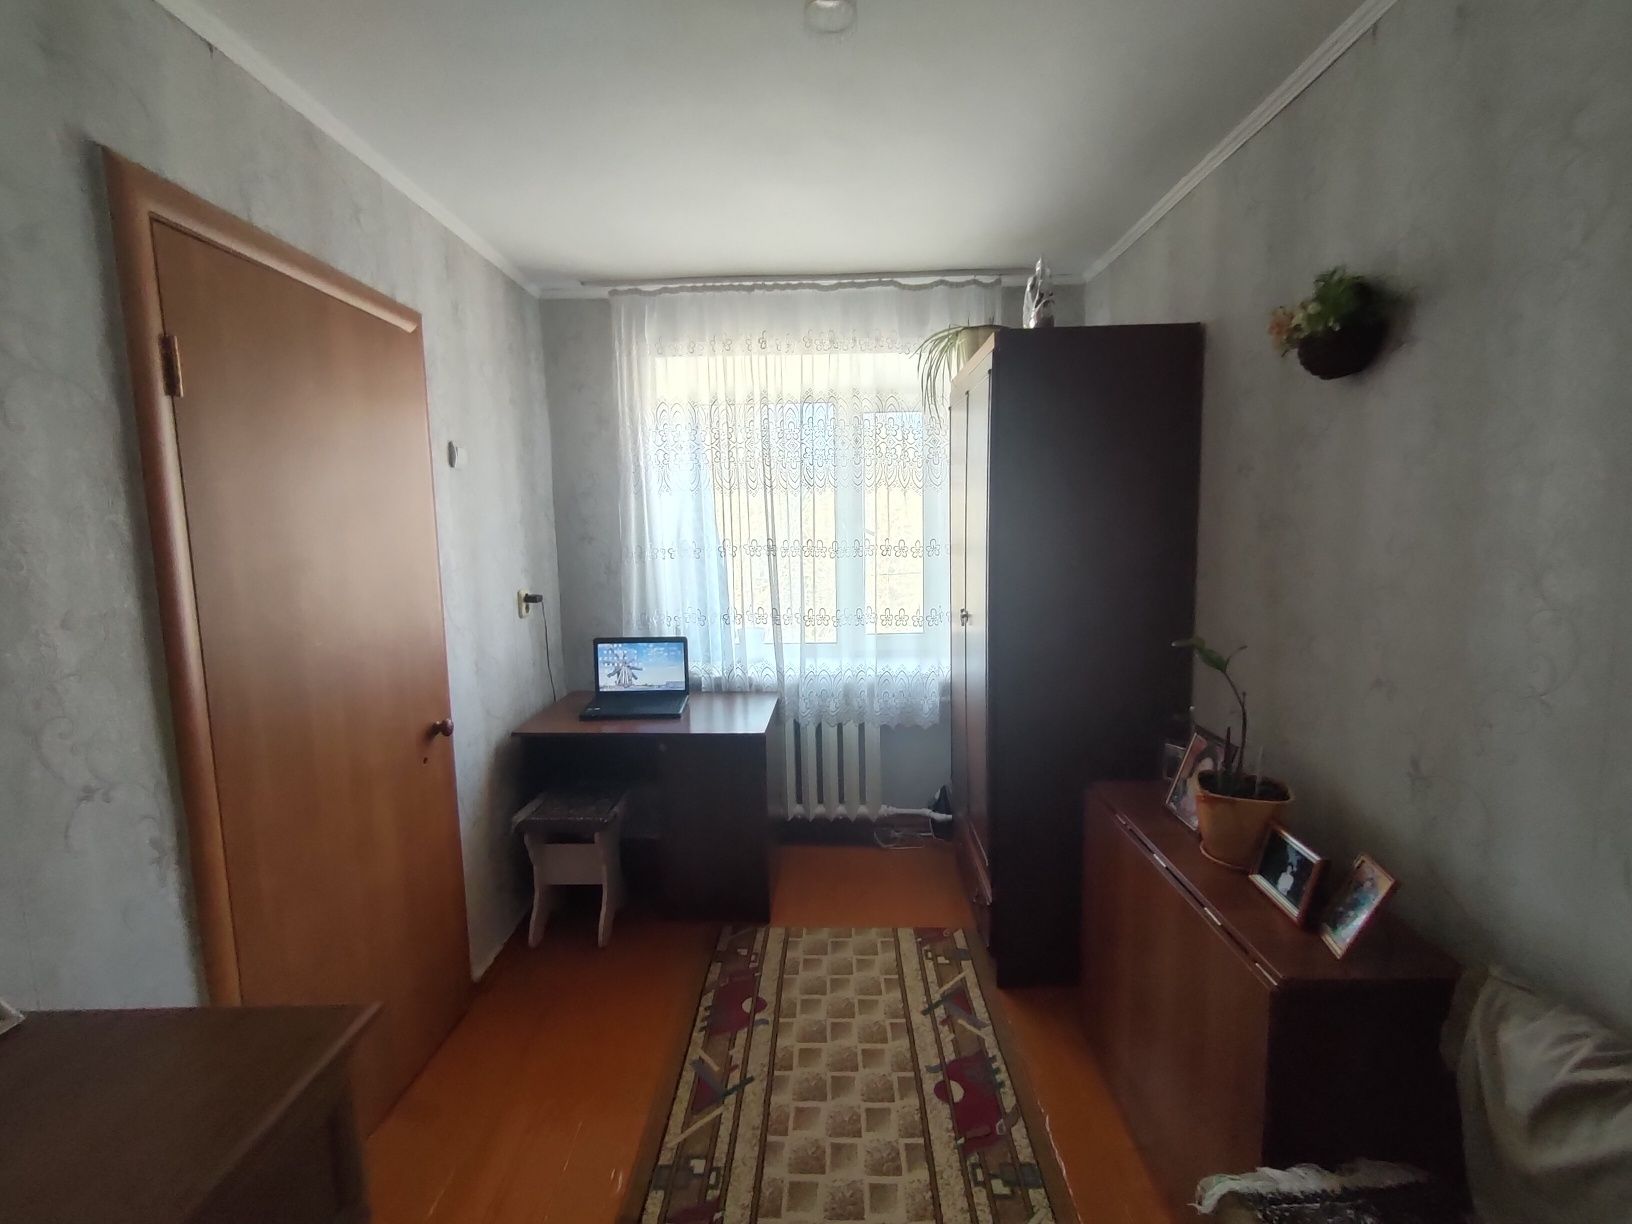 Продаётся 2-х комнатная квартира в Сортировки